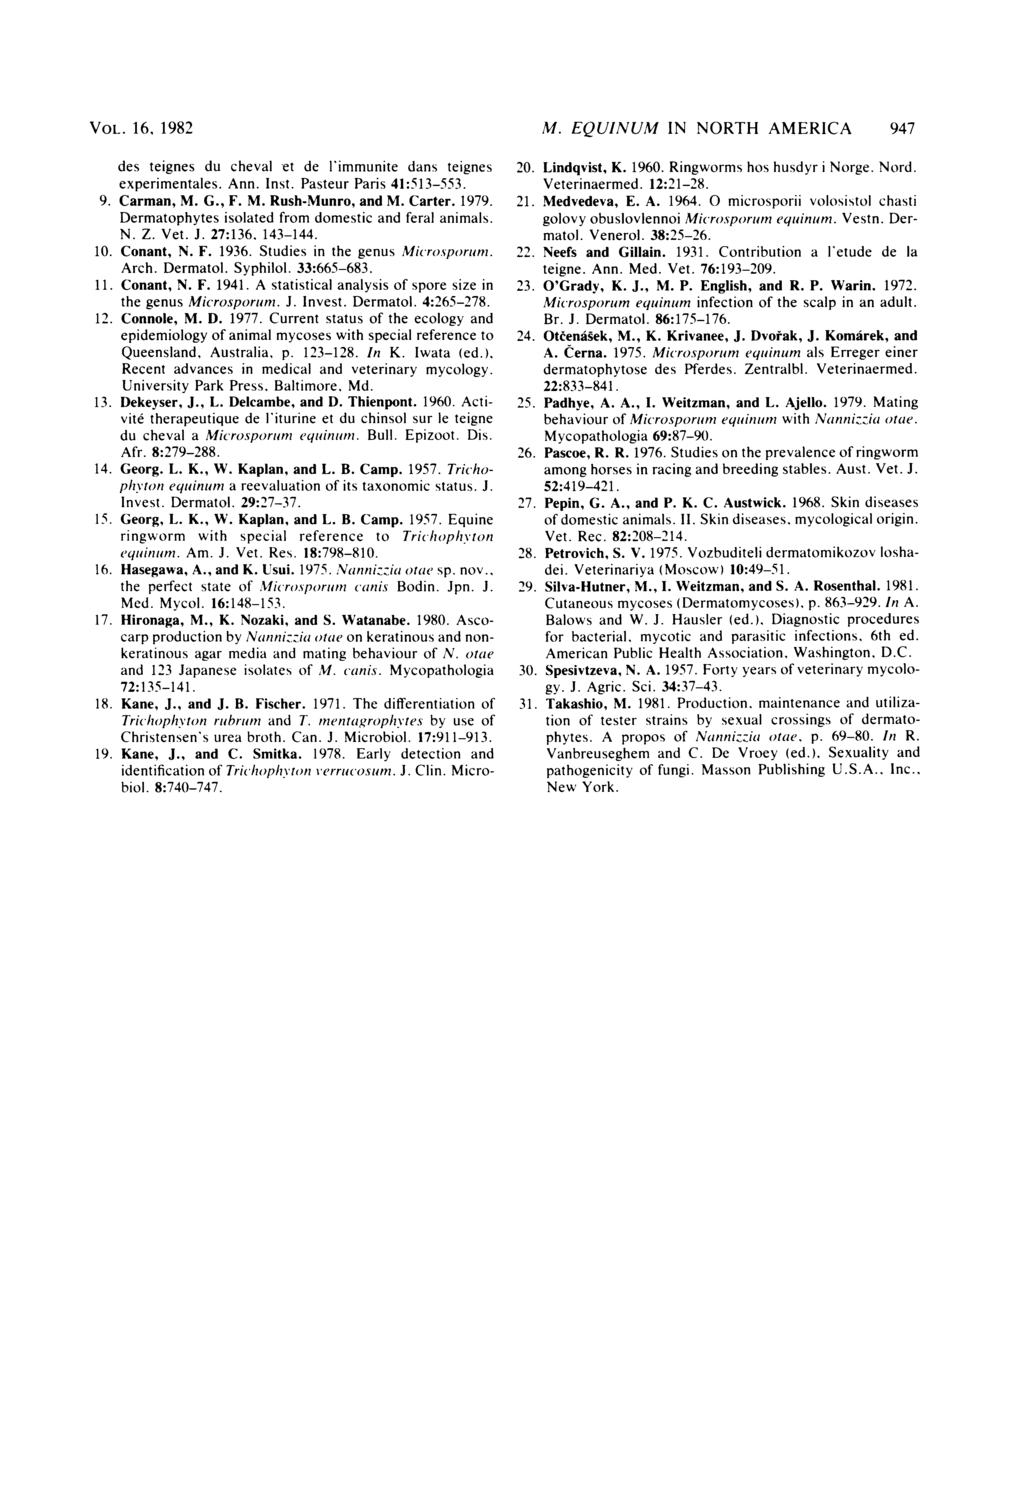 VOL. 16, 1982 des teignes du cheval et de l'immunite dans teignes experimentales. Ann. Inst. Pasteur Paris 41:513-553. 9. Carman, M. G., F. M. Rush-Munro, and M. Carter. 1979.